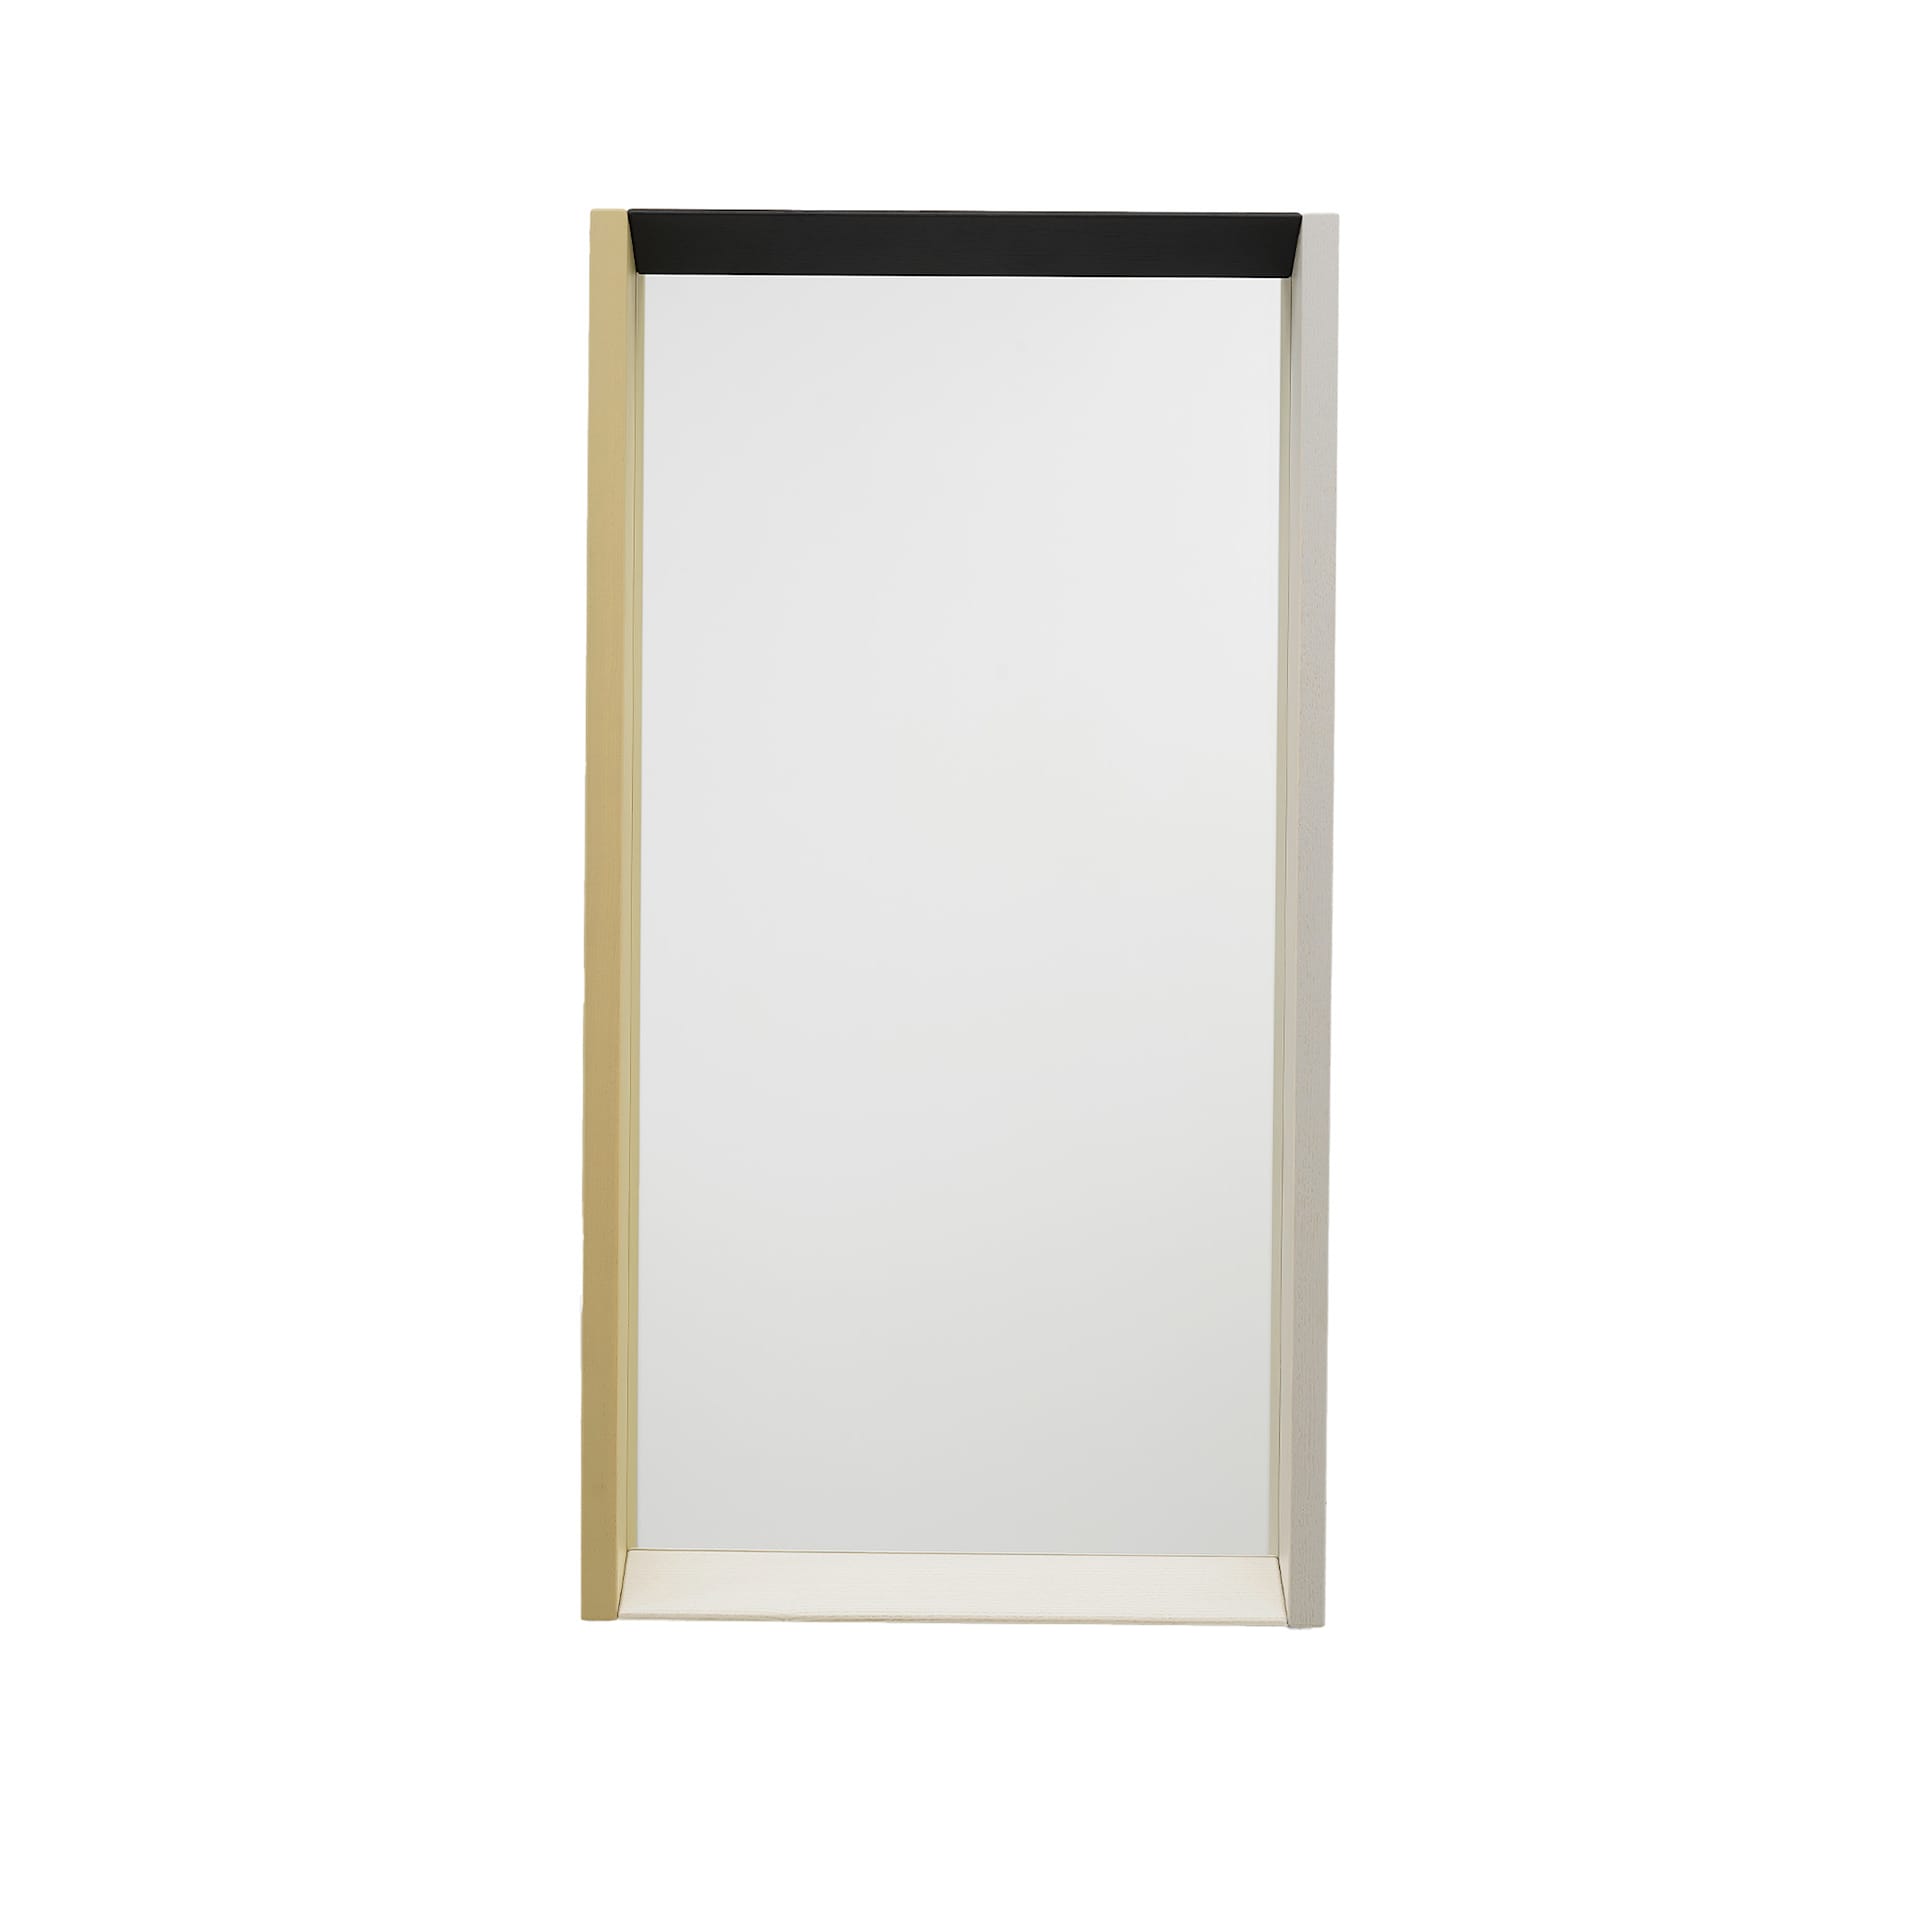 Colour Frame Mirror Medium - Vitra - NO GA